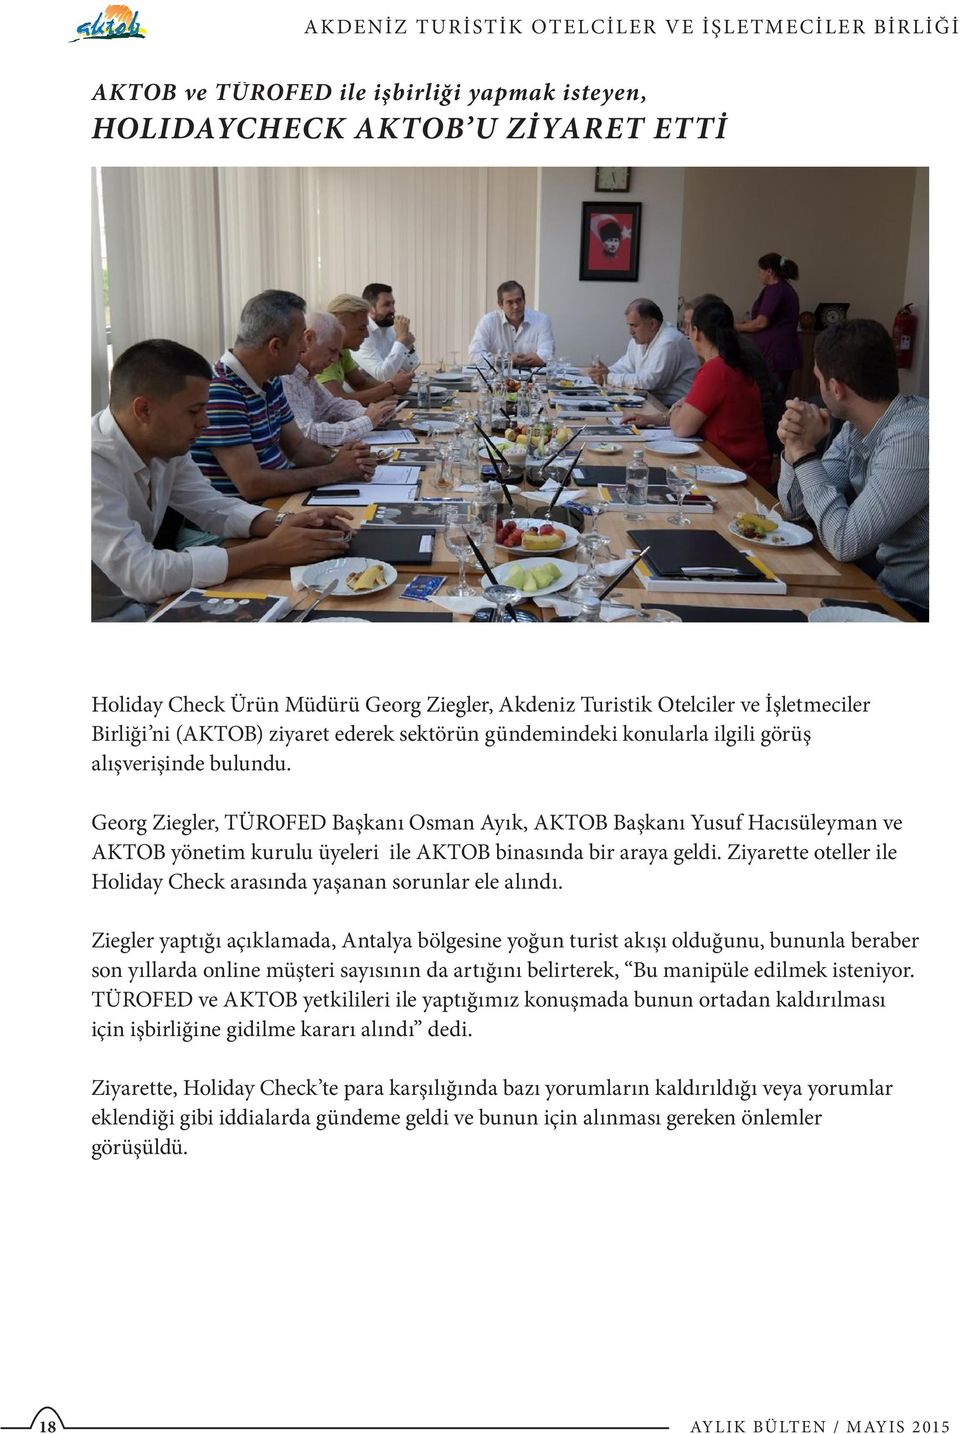 Georg Ziegler, TÜROFED Başkanı Osman Ayık, AKTOB Başkanı Yusuf Hacısüleyman ve AKTOB yönetim kurulu üyeleri ile AKTOB binasında bir araya geldi.